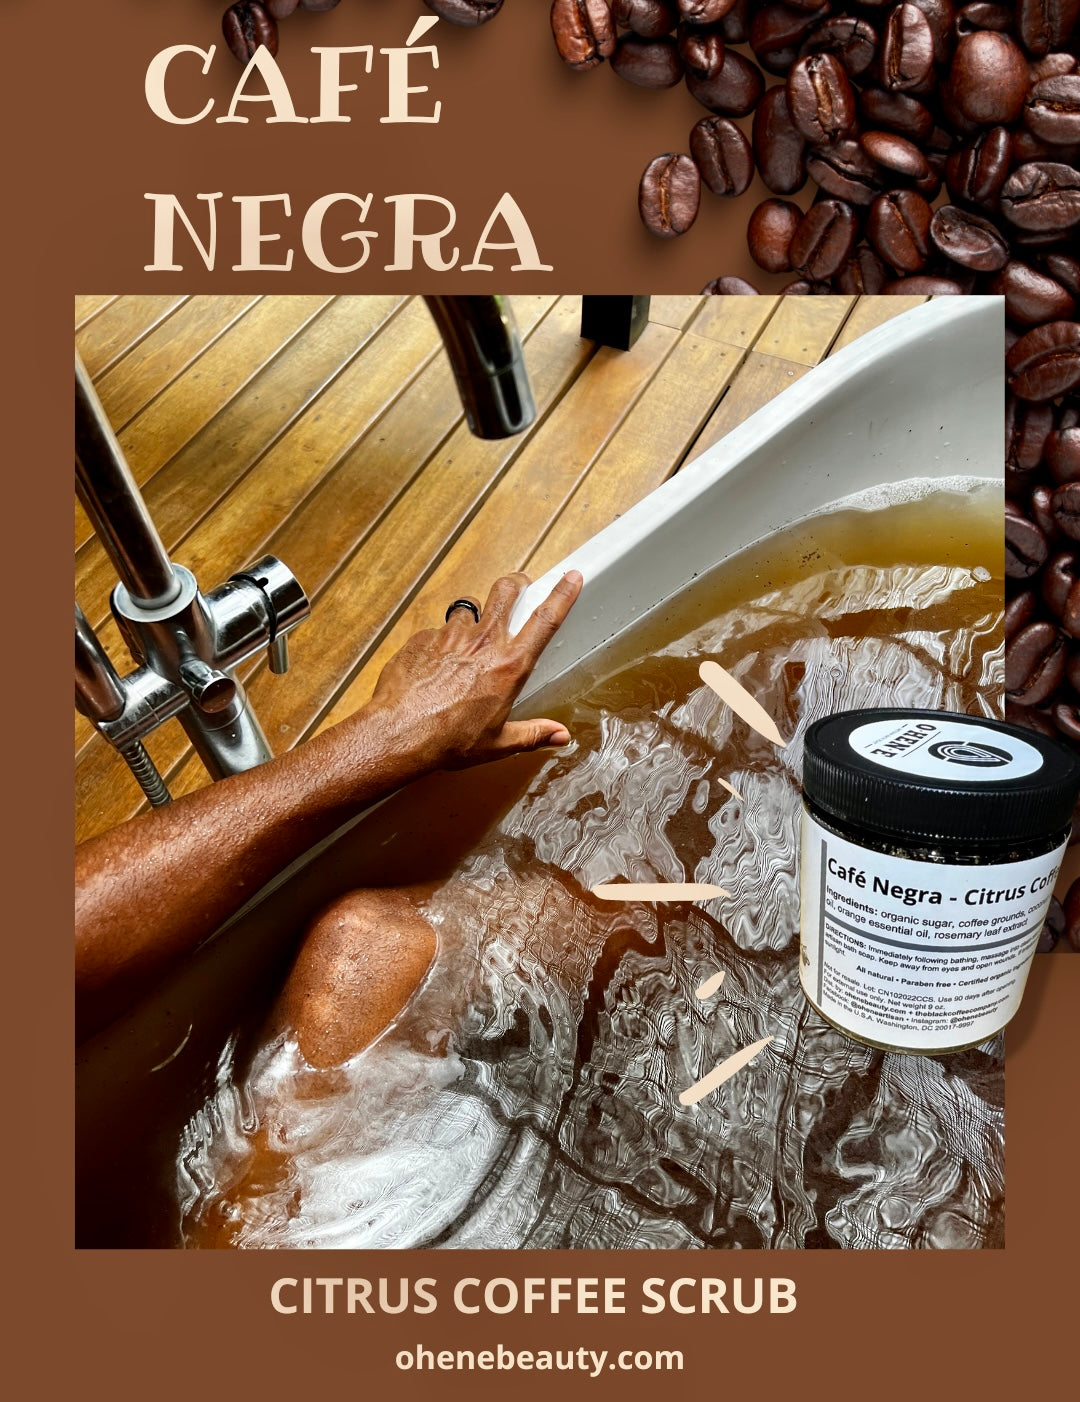 Café Negra - Citrus Coffee Scrub